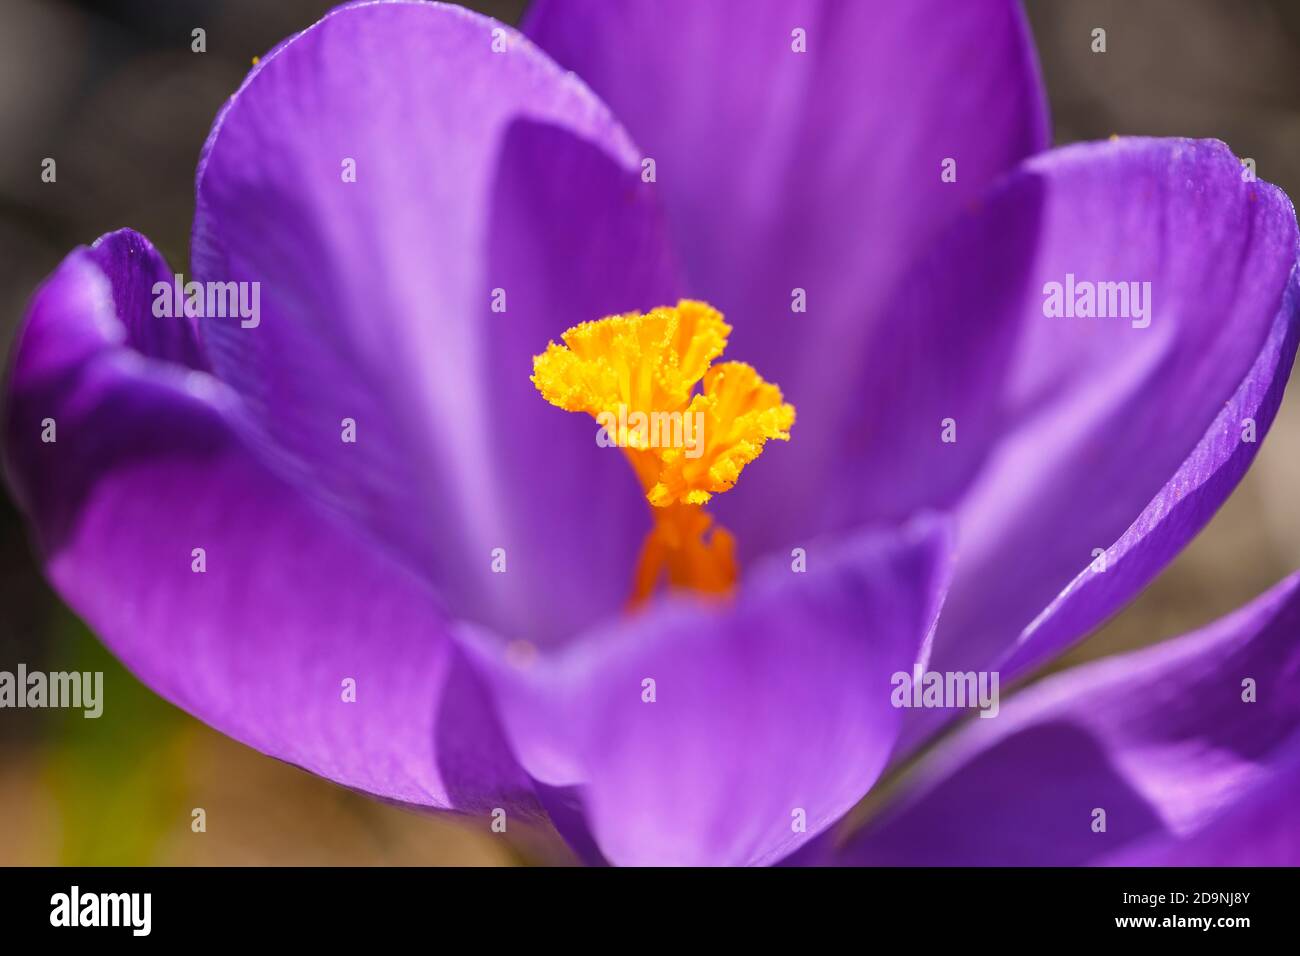 Purple flower of crocus (Crocus sp.), Garden plant, Germany Stock Photo